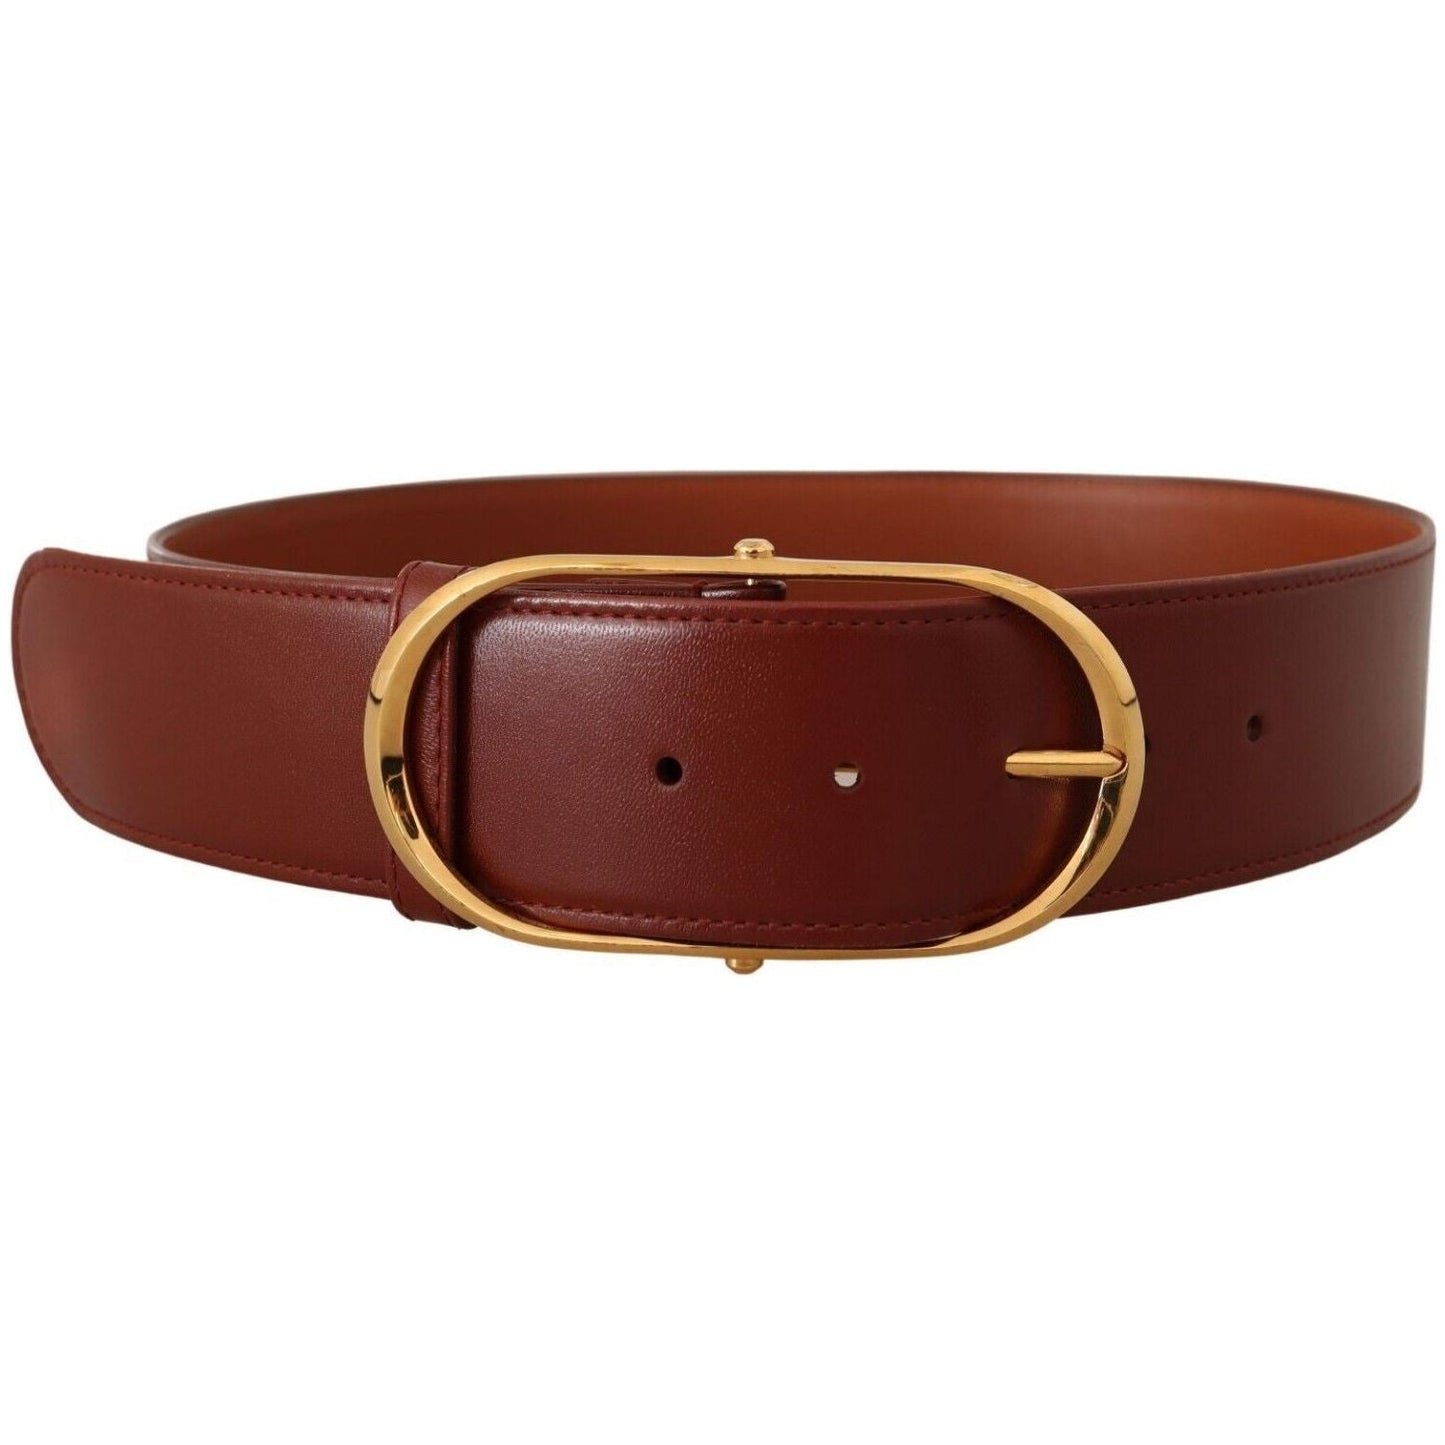 Dolce & Gabbana Elegant Gold Buckle Leather Belt brown-leather-gold-metal-oval-buckle-belt-8 s-l1600-298-27d95e63-60c.jpg